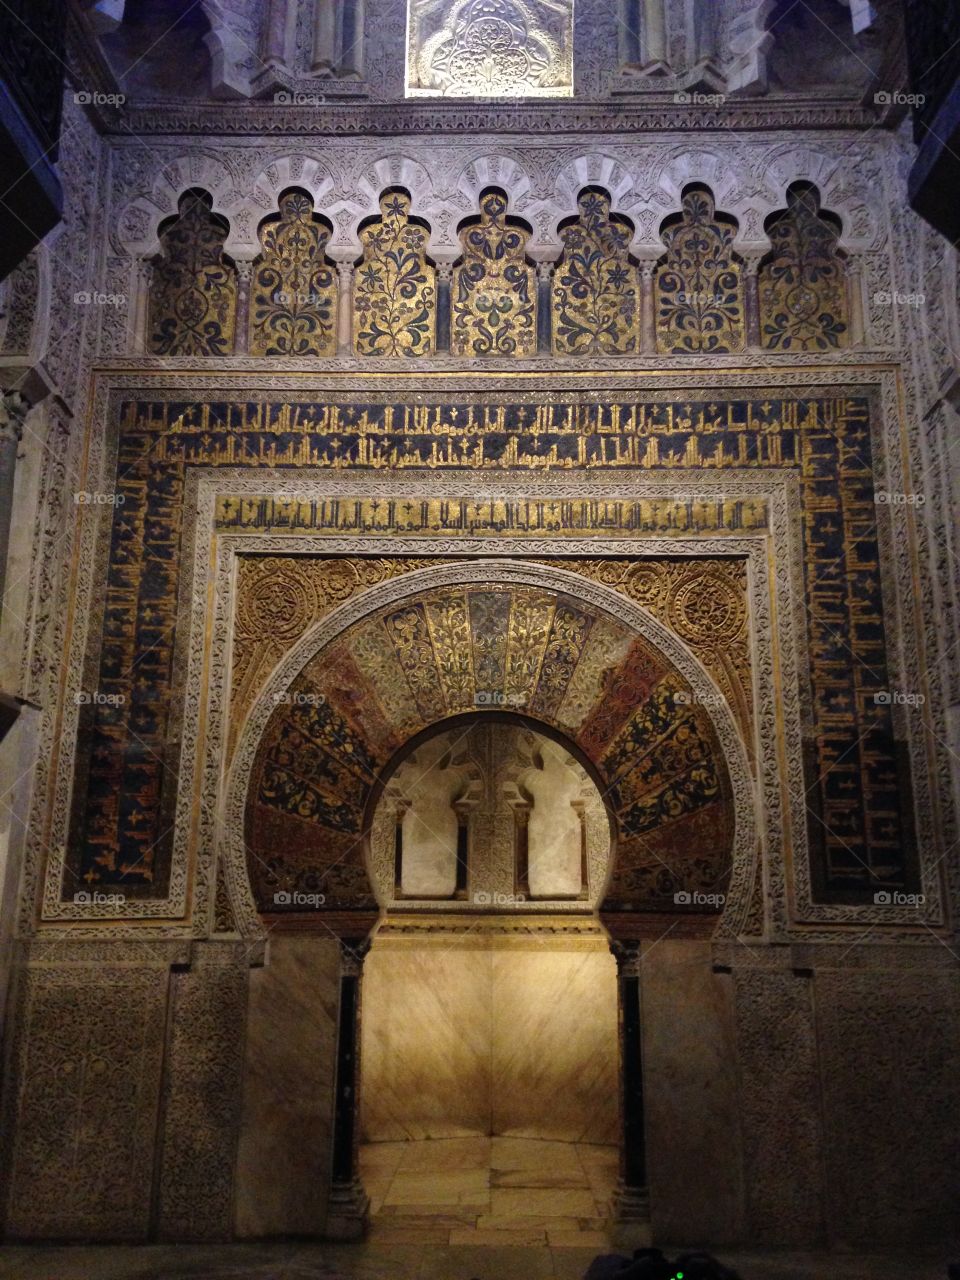 Grand Mosque of Córdoba . Interior of Grand Mosque of Córdoba, Spain